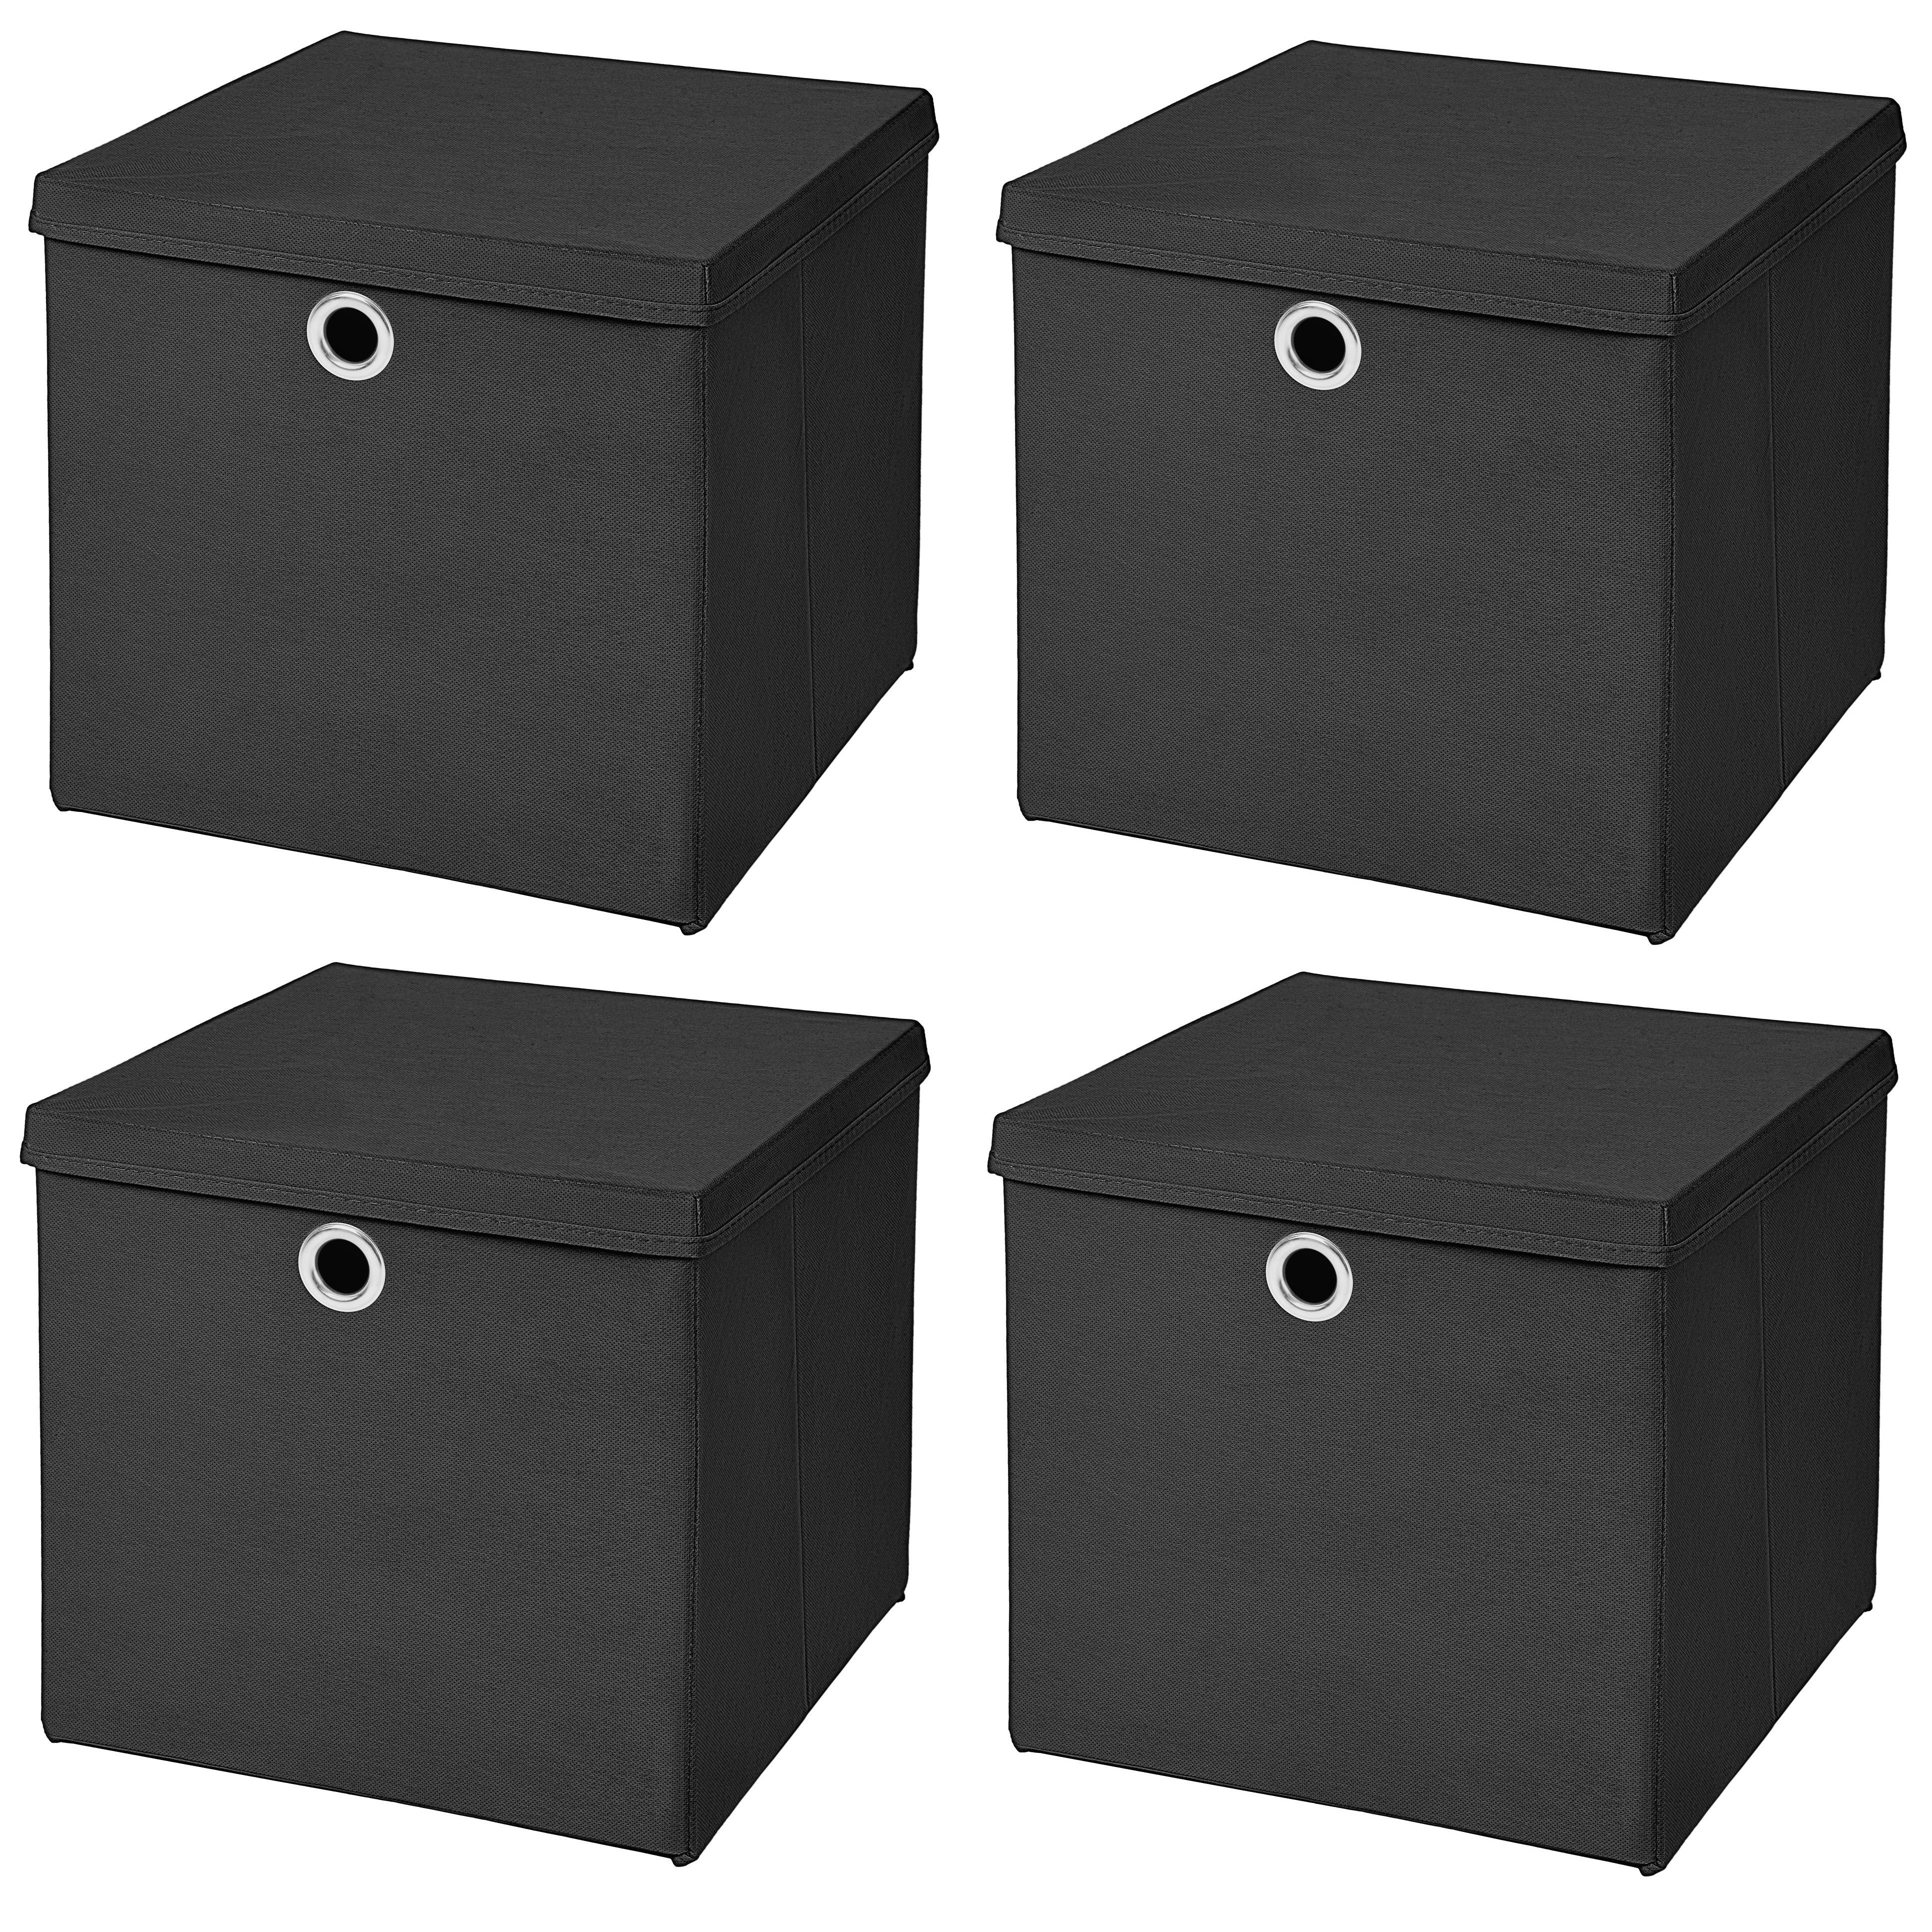 Faltbox 4 Stück Faltboxen 28 x 28 x 28 cm faltbar mit Deckel Aufbewahrungsbox in verschiedenen Farben (4er SET 28x28x28) 28cm